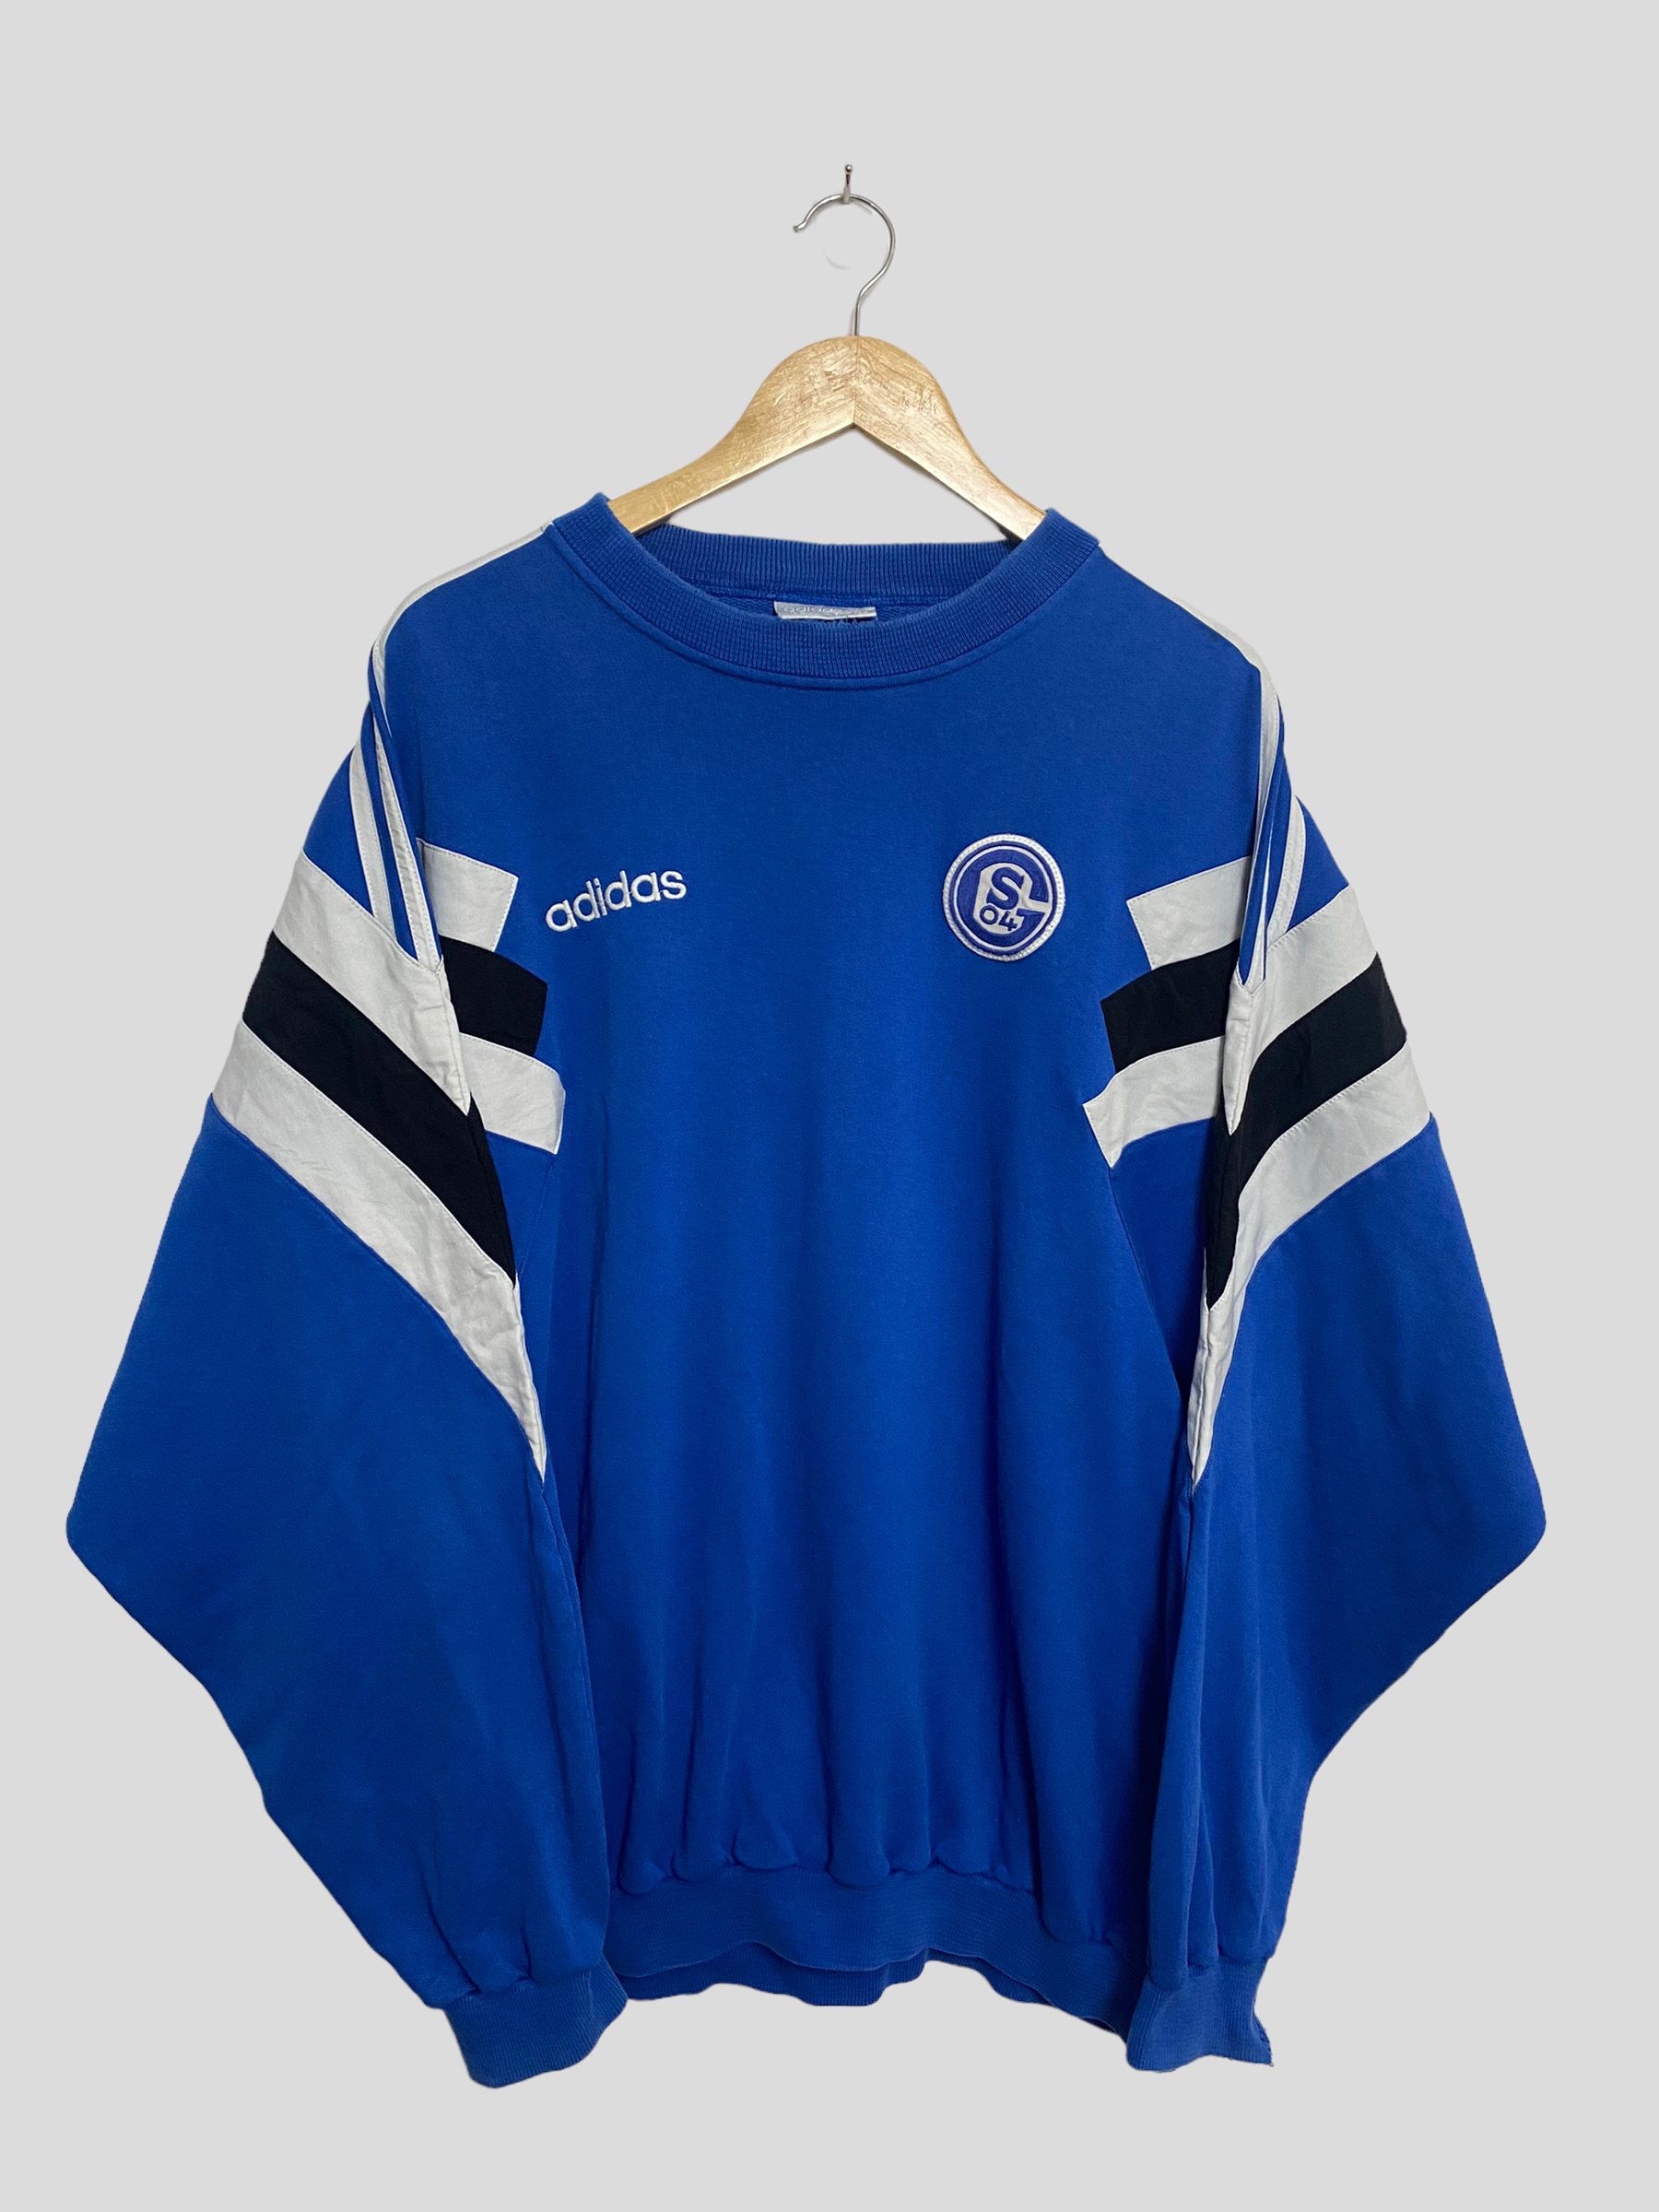 routine Voorzichtigheid Tegen de wil Adidas Schalke Sweatshirt – Vibra Clothing Company